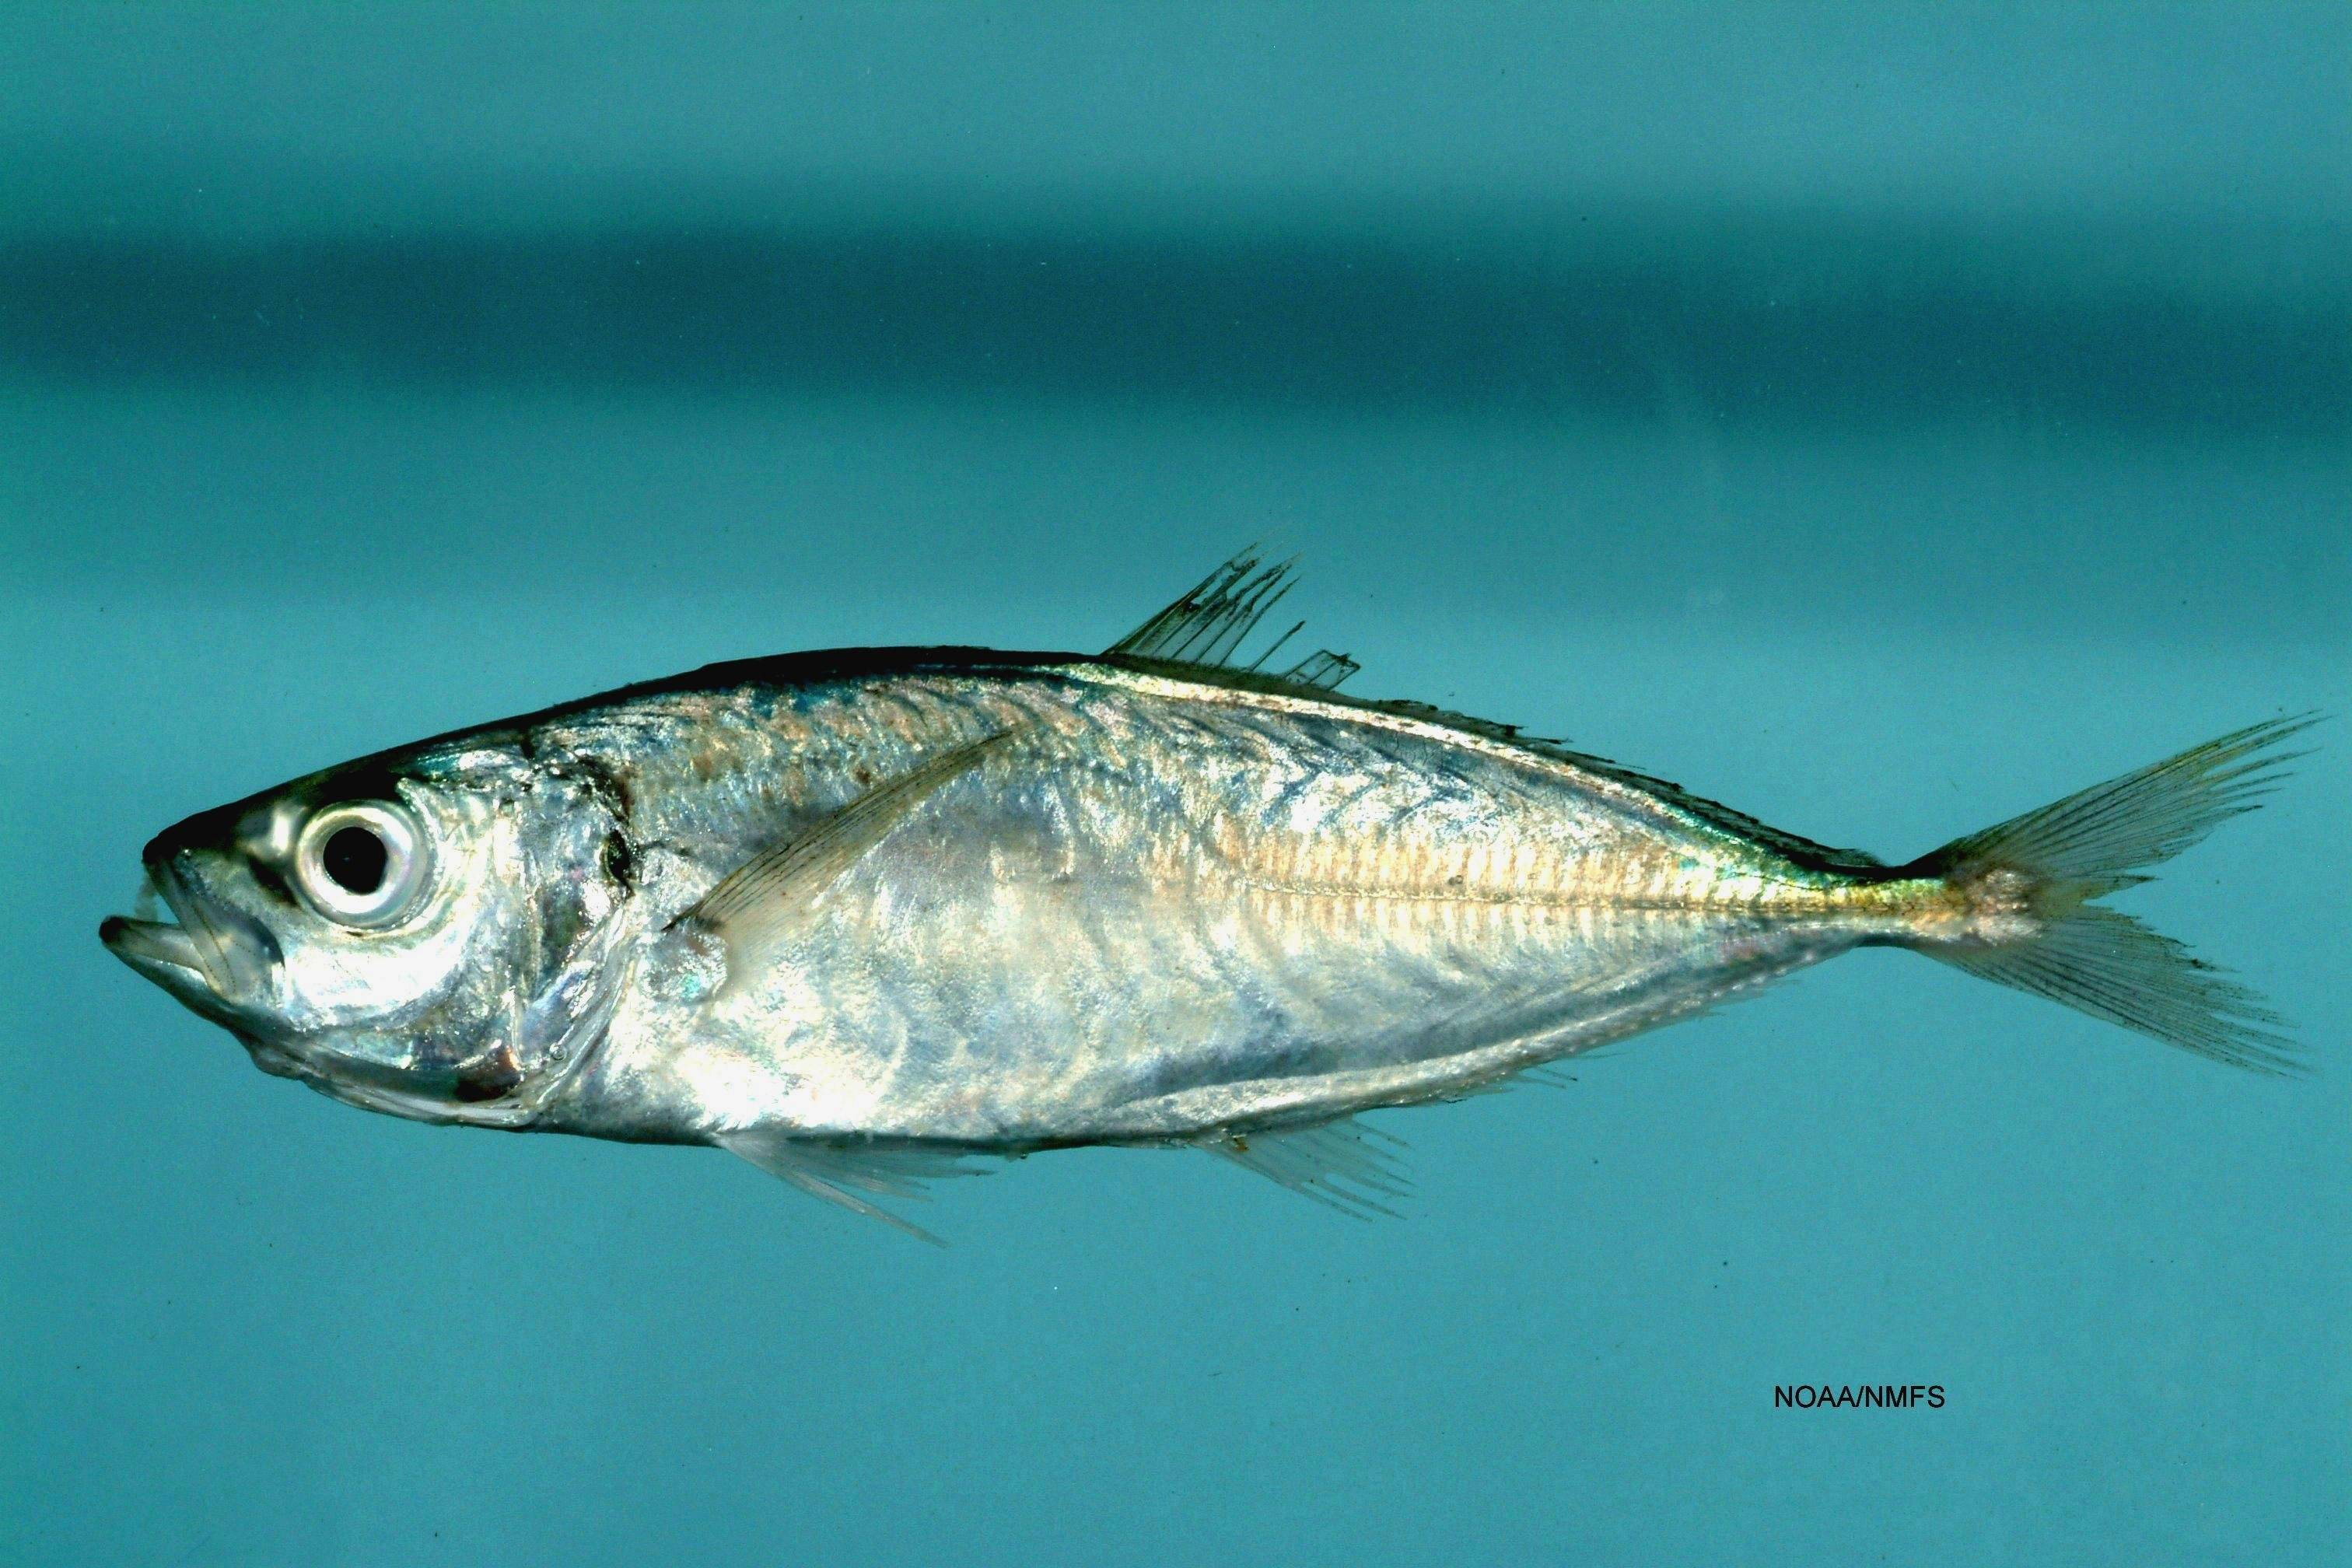 Рыба «Луфарь» фото и описание